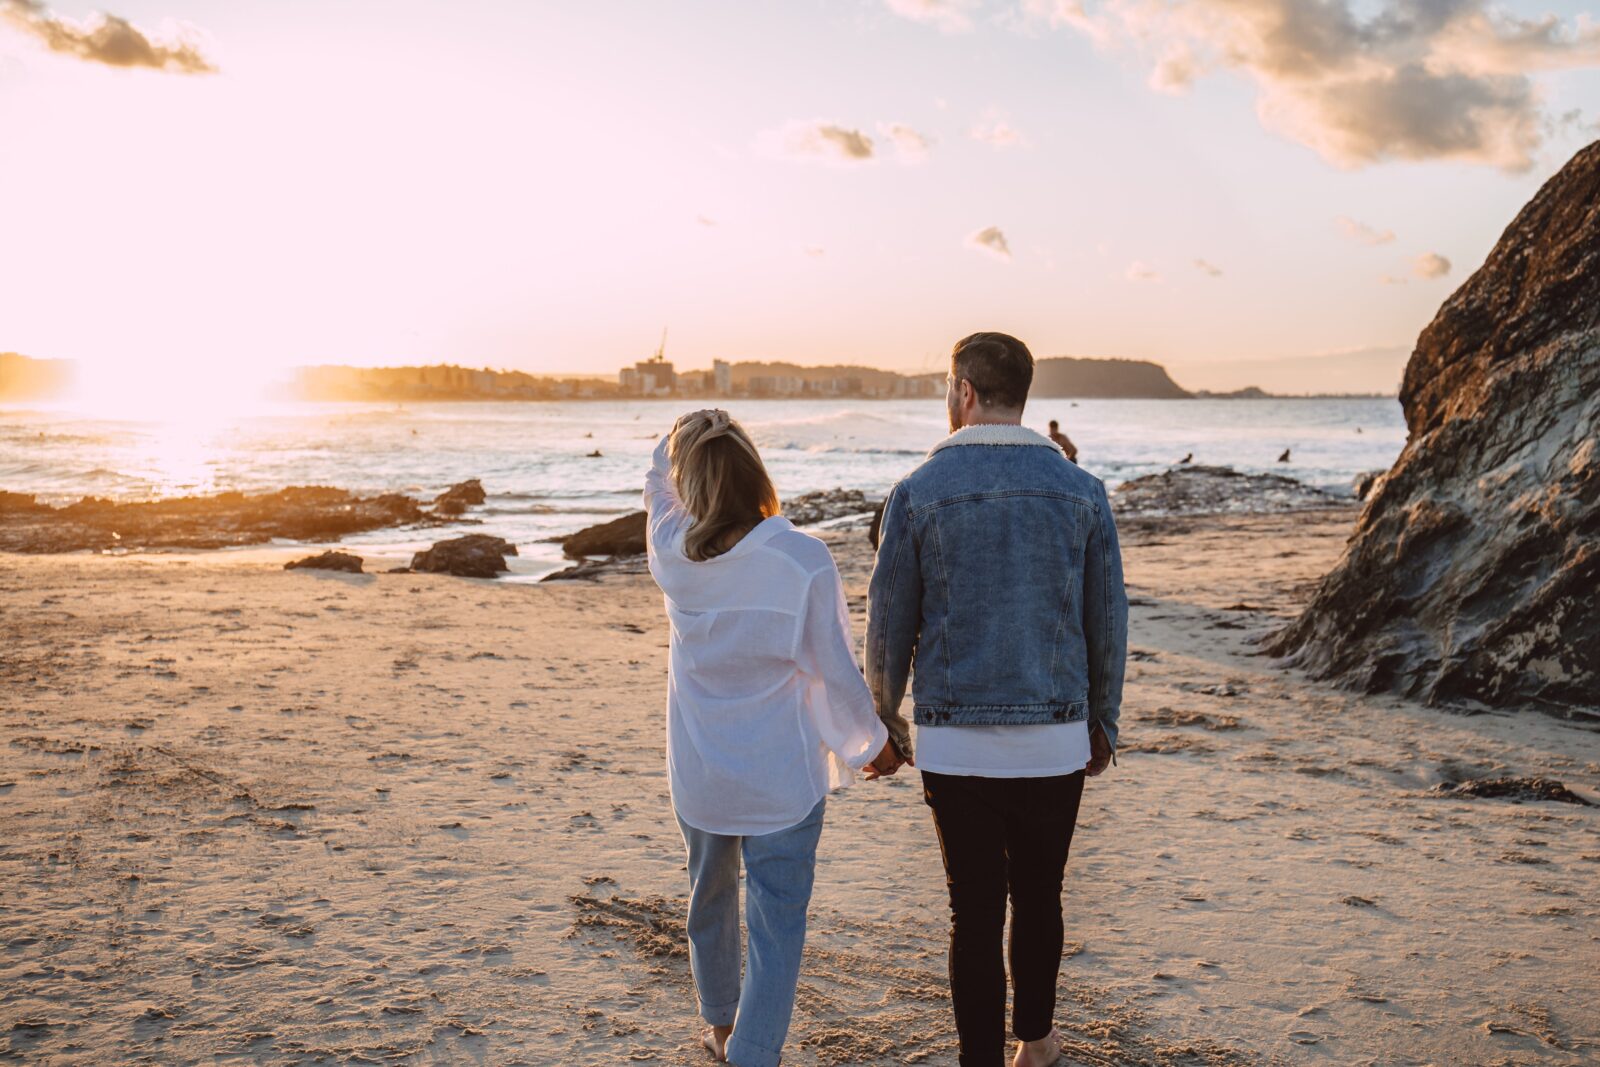 A couple holding hands, walking along a beach towards a sunset